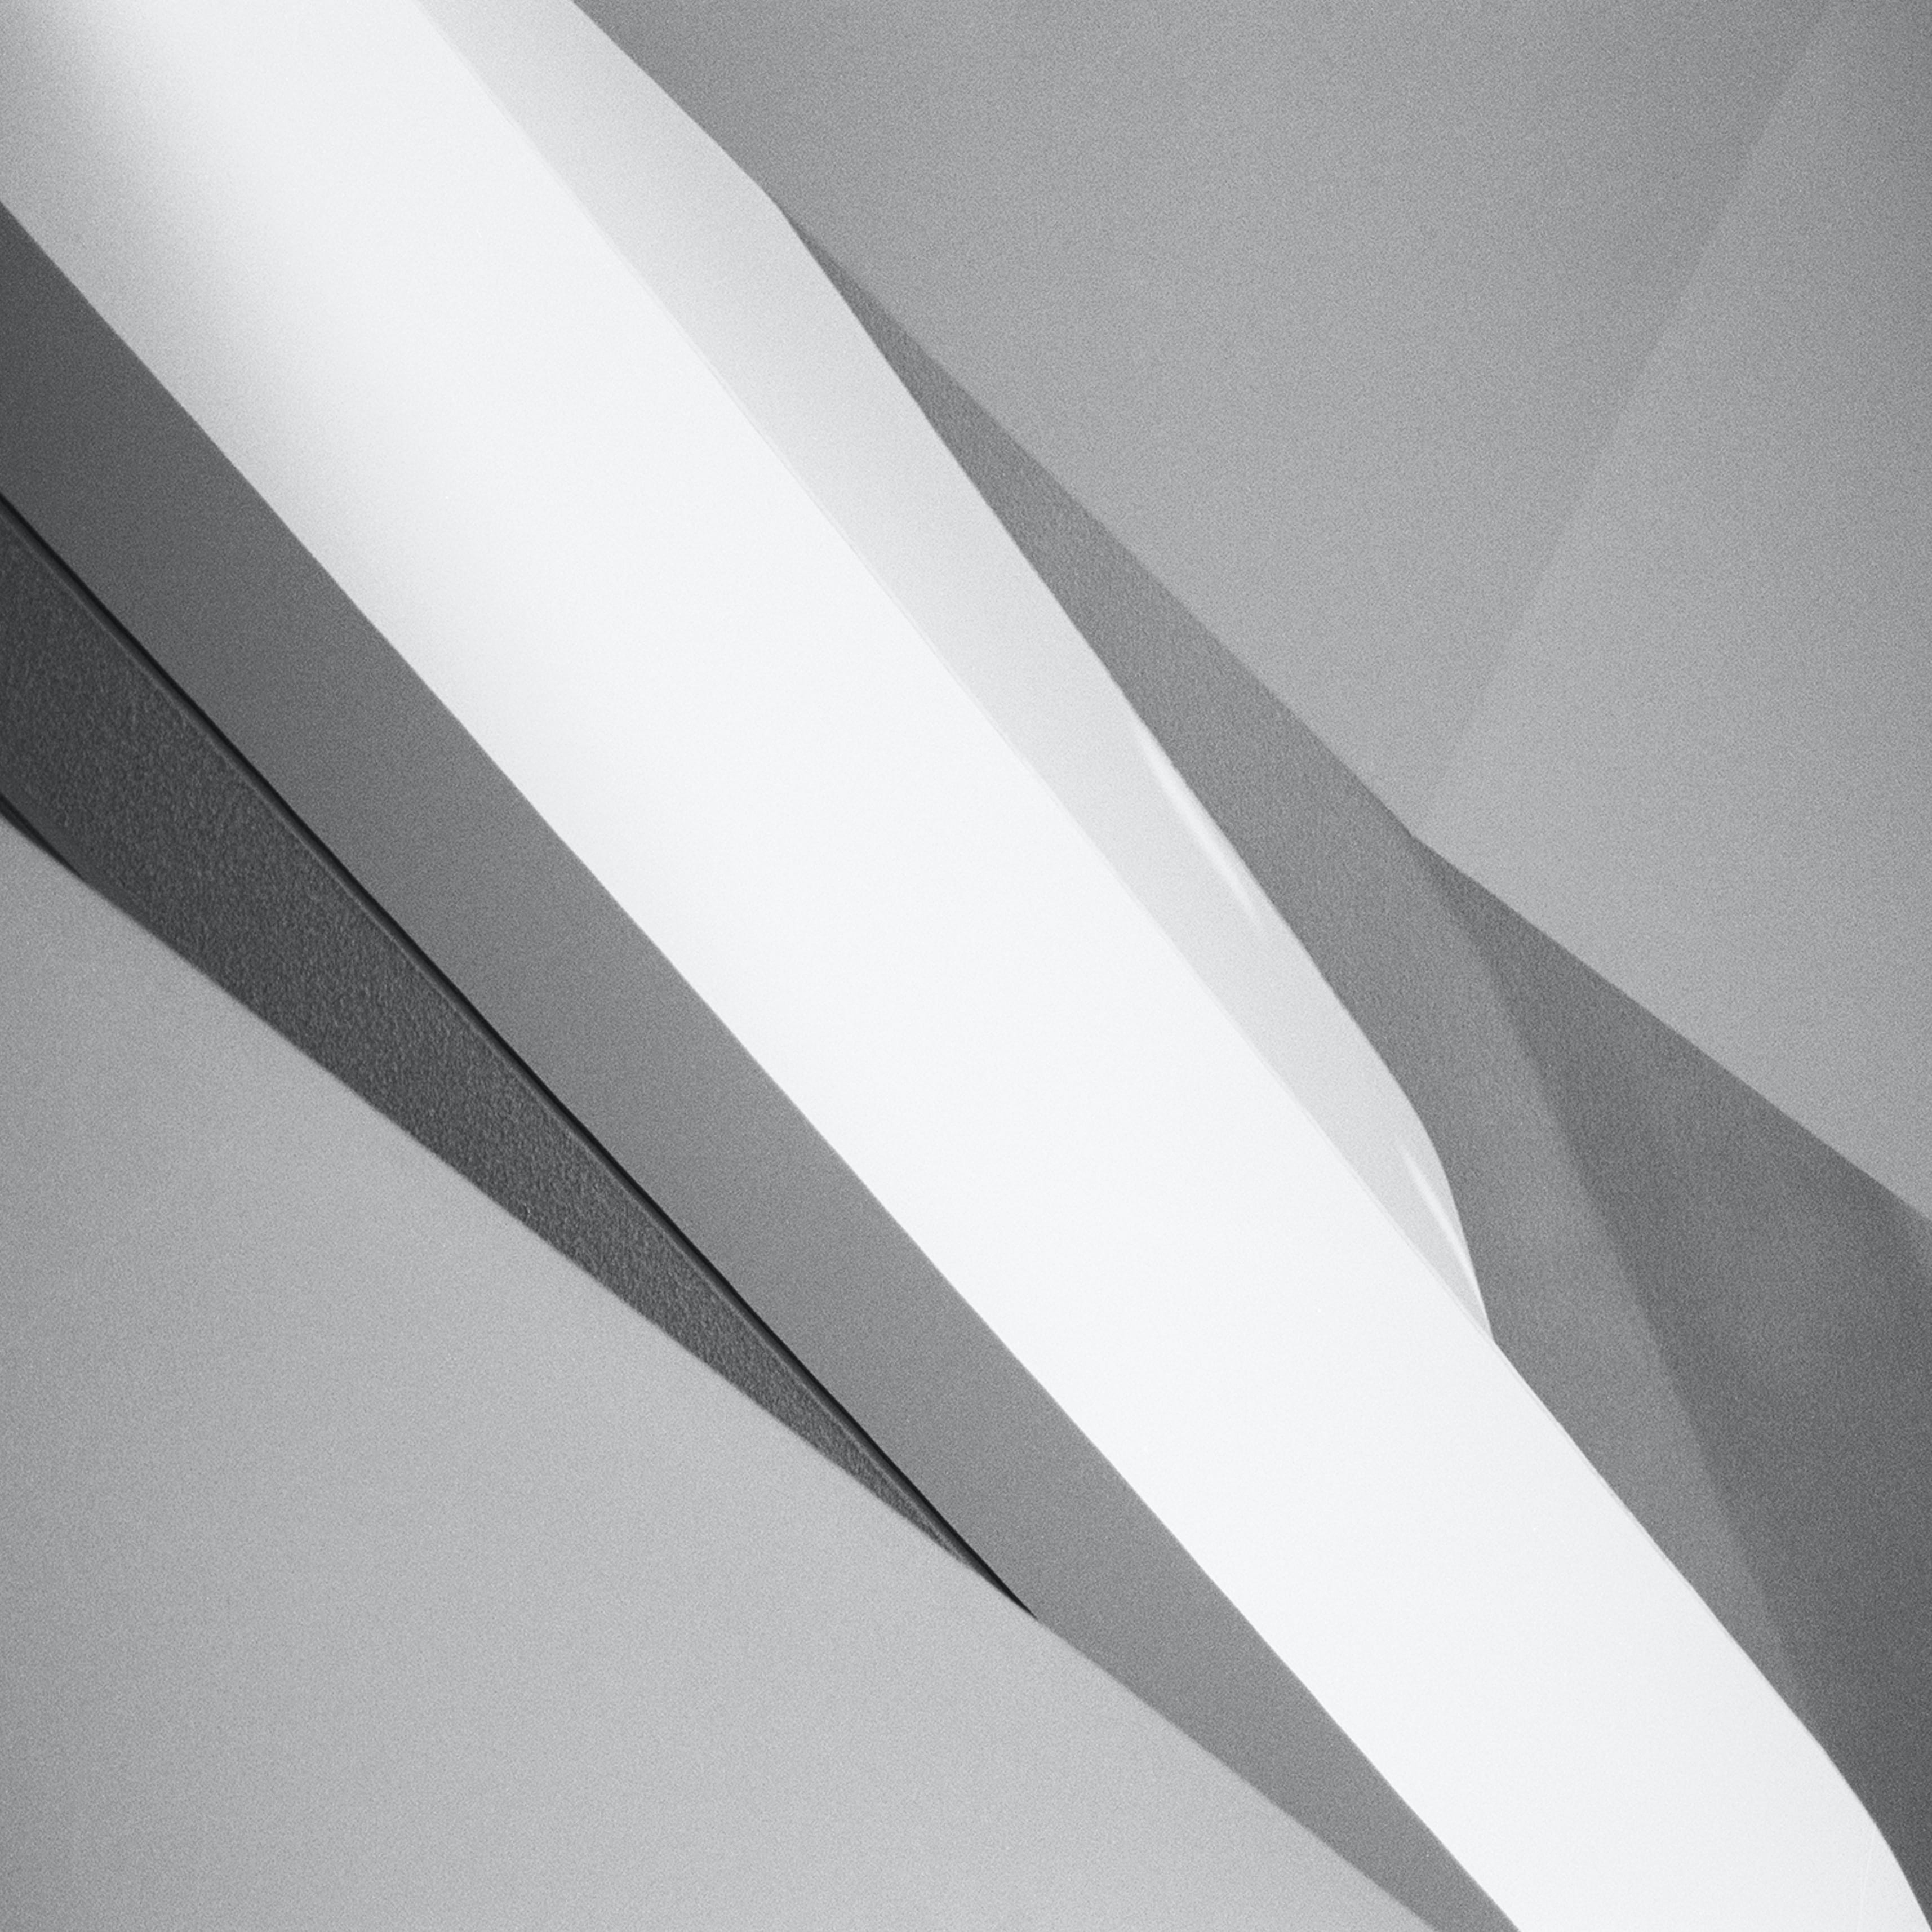 Martin C. Schmidt photographie abstraite formes et lignes géométriques grises